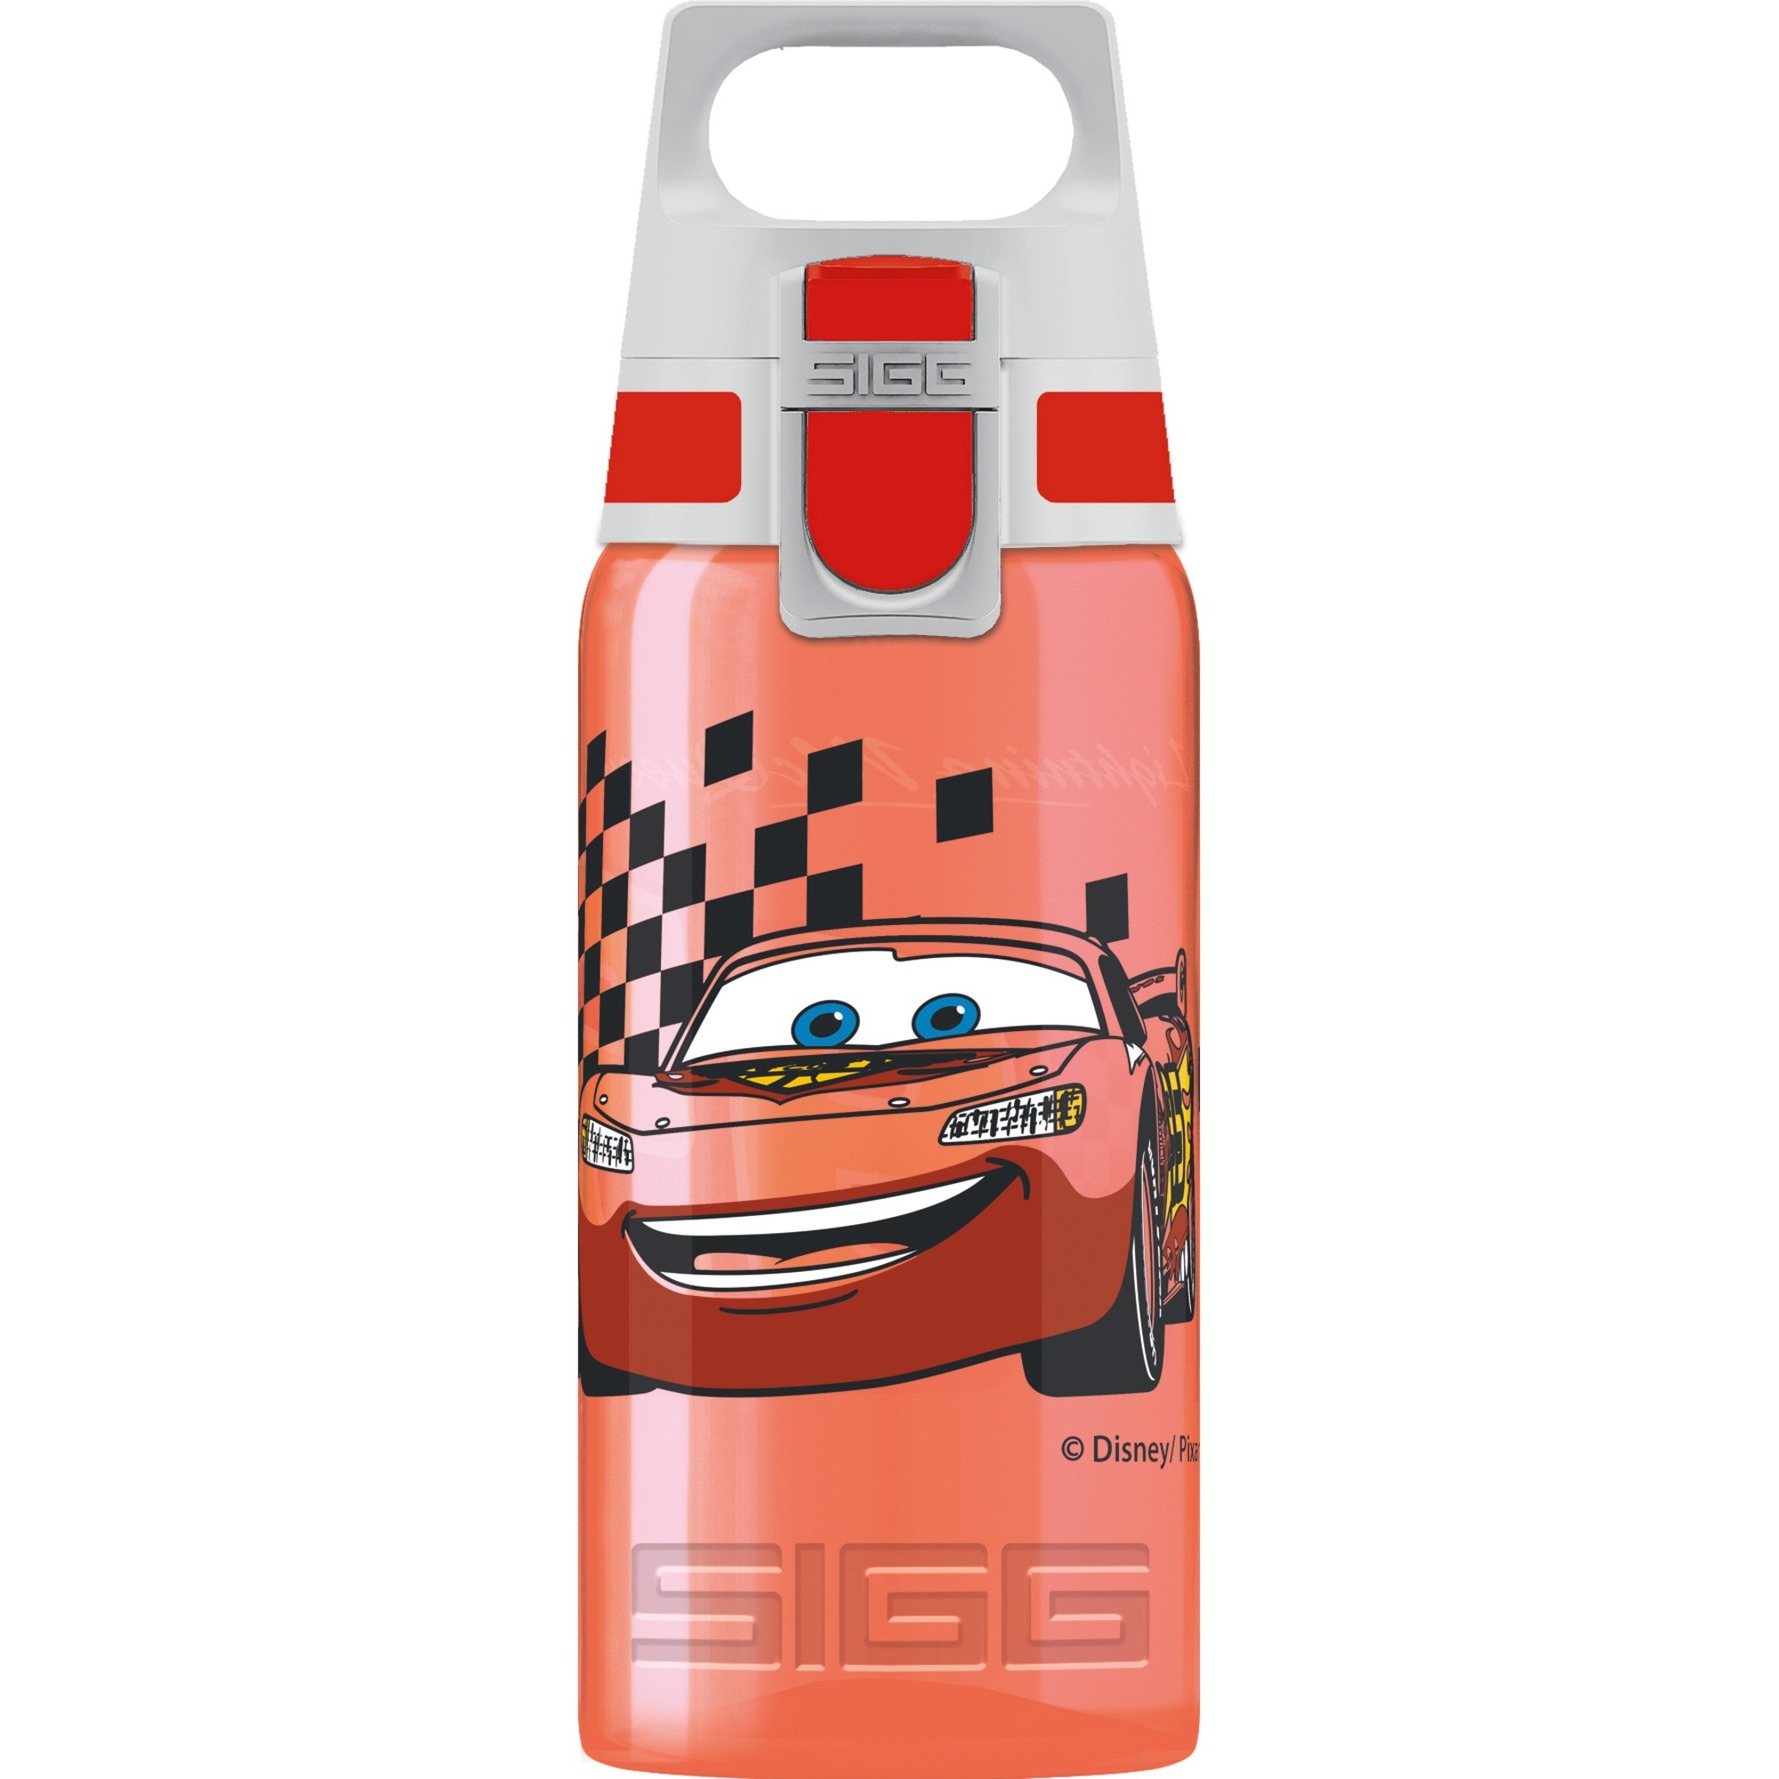 Image of Alternate - Trinkflasche VIVA ONE Cars 0,5L online einkaufen bei Alternate